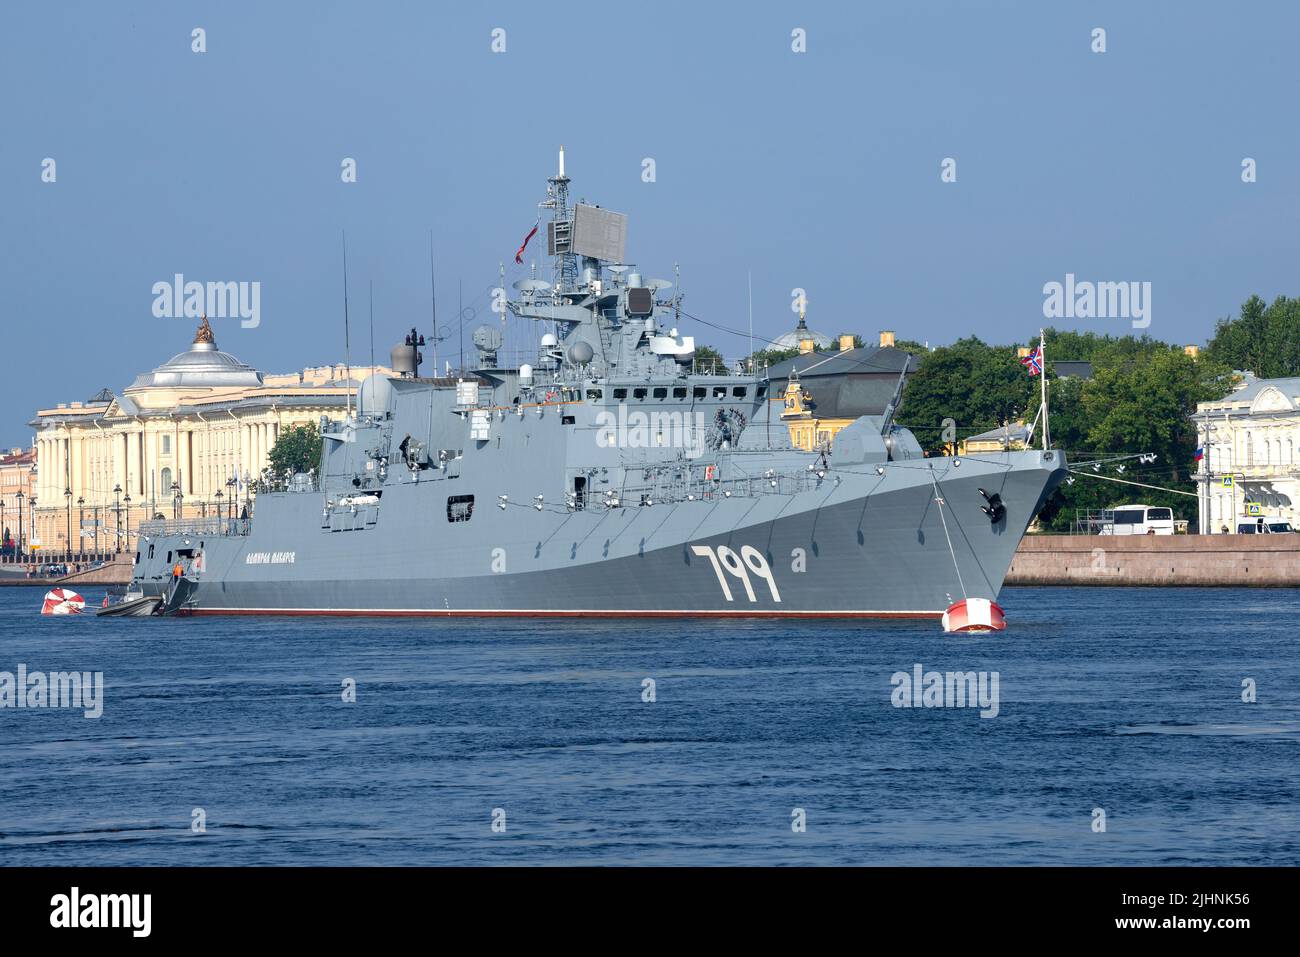 SAN PETERSBURGO, RUSIA - 28 DE JULIO de 2018: Fragata rusa Almirante Makarov en el dique de la Universitetskaya. Preparativos para el desfile militar i Foto de stock